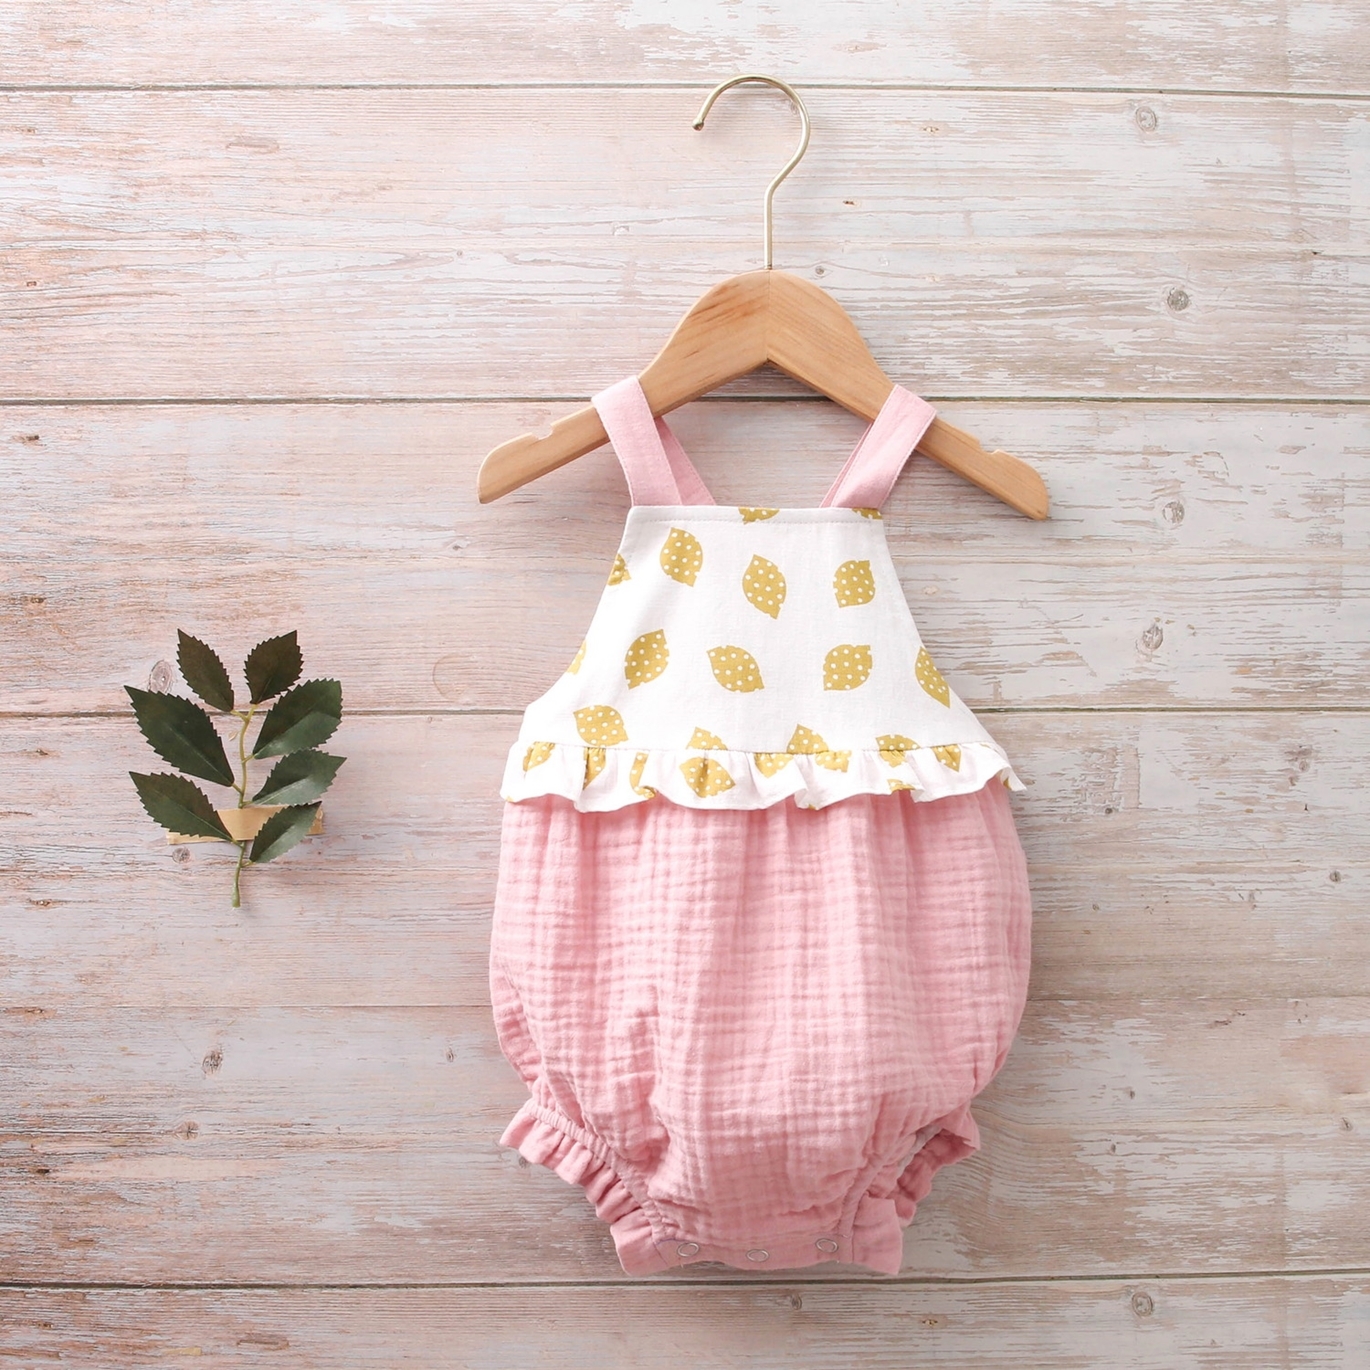 Imagen de Ranita bebé tirantes rosa bambula combinación estampados limones 